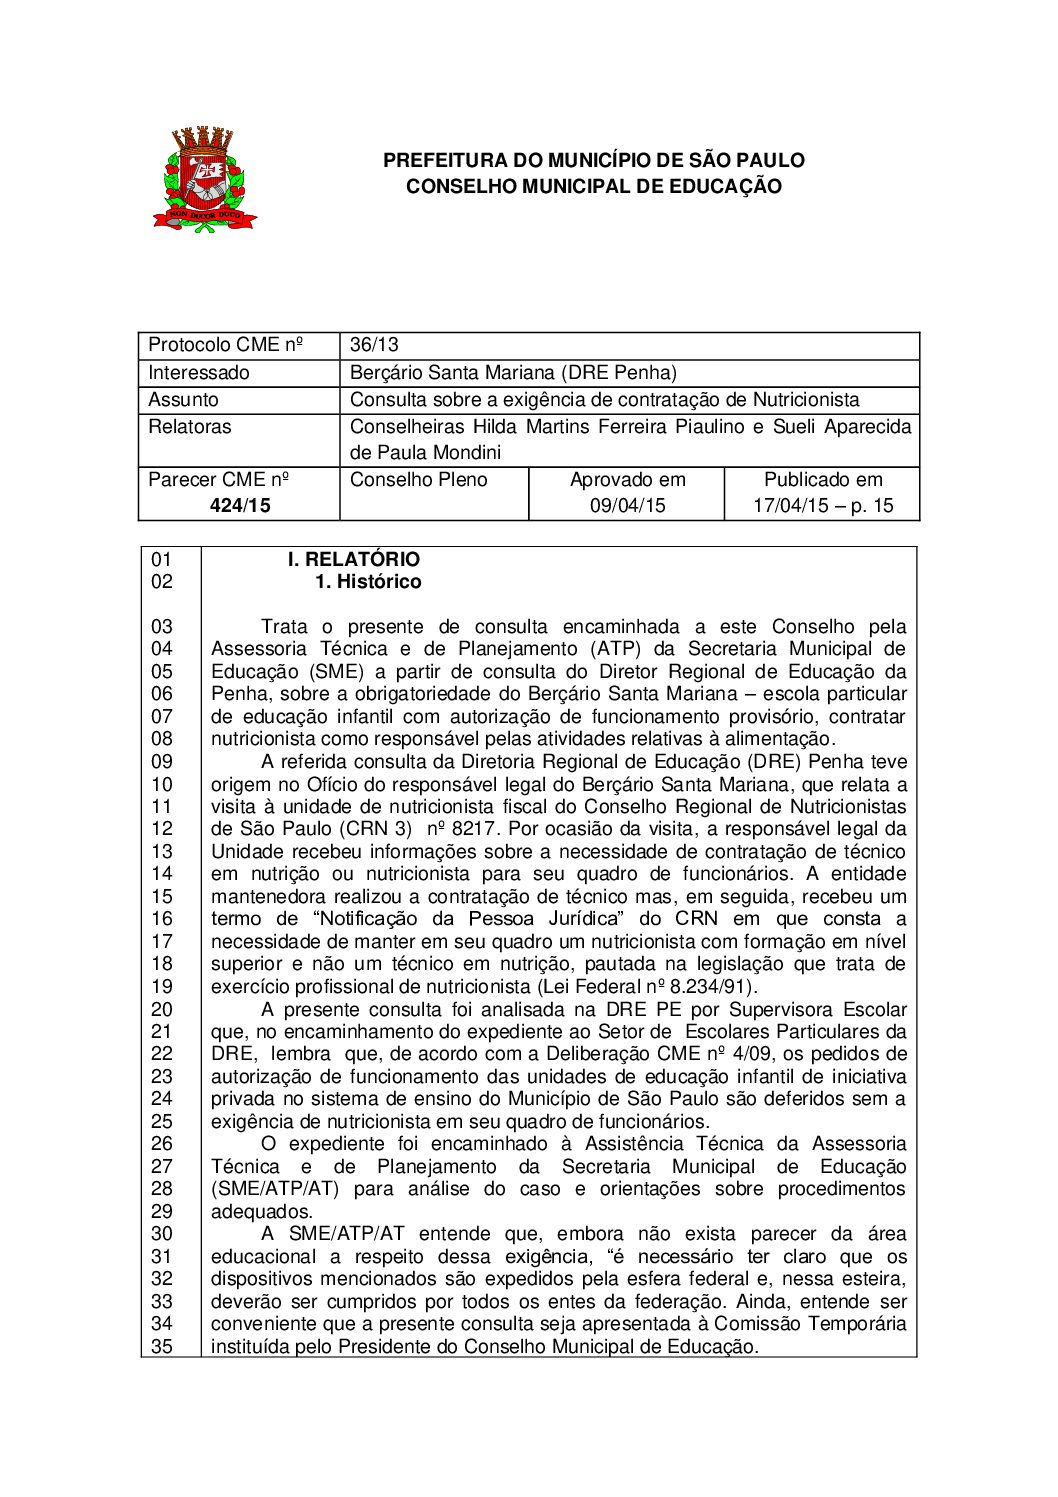 Parecer CME nº 424/2015 - Berçário Santa Mariana (DRE Penha) - Consulta sobre a exigência de contratação de Nutricionista 